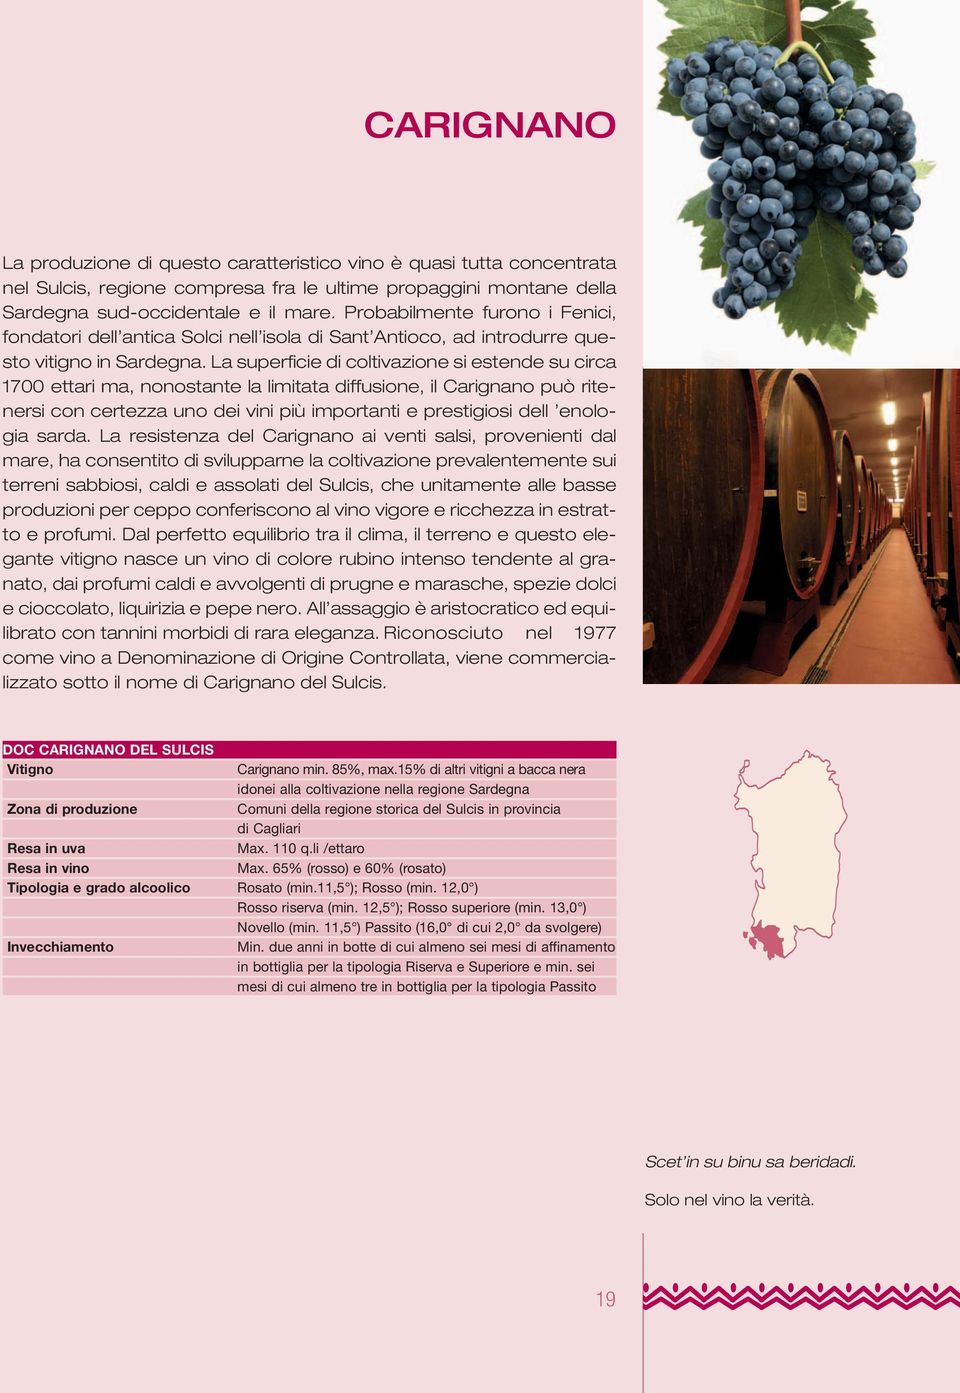 La superficie di coltivazione si estende su circa 1700 ettari ma, nonostante la limitata diffusione, il Carignano può ritenersi con certezza uno dei vini più importanti e prestigiosi dell enologia